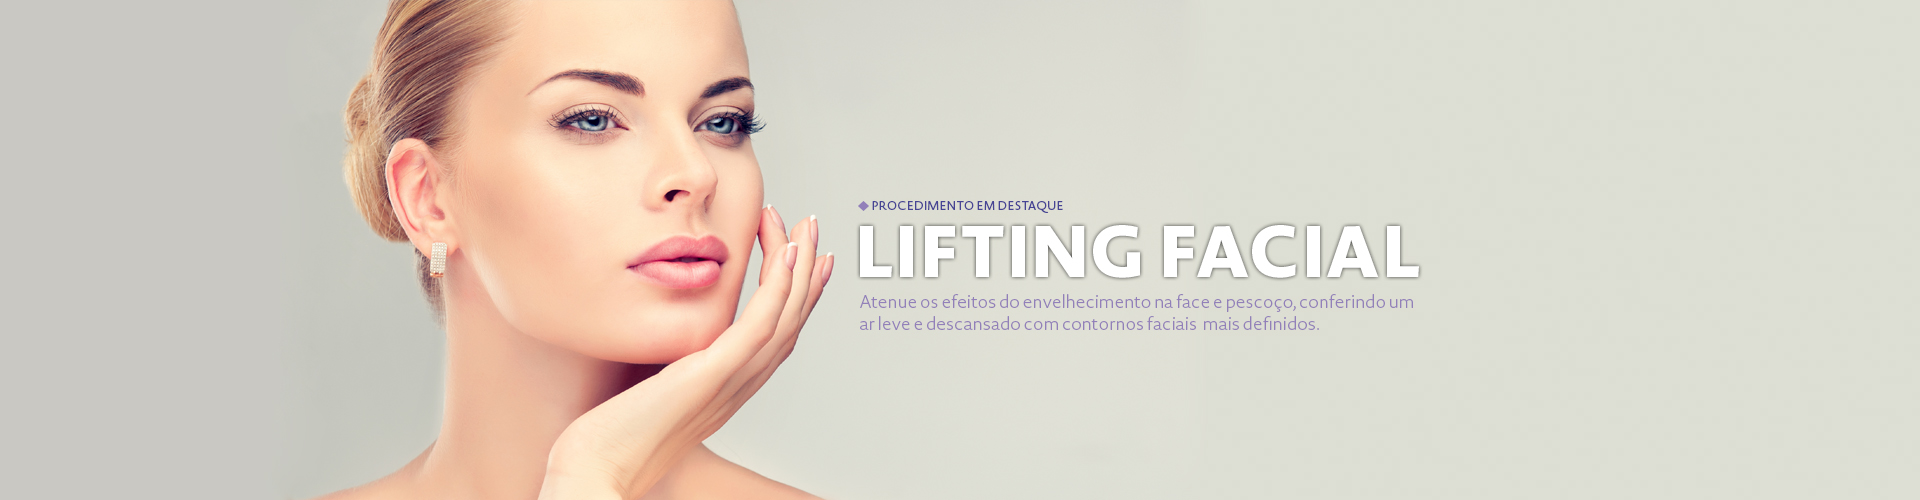 Lifting Facial